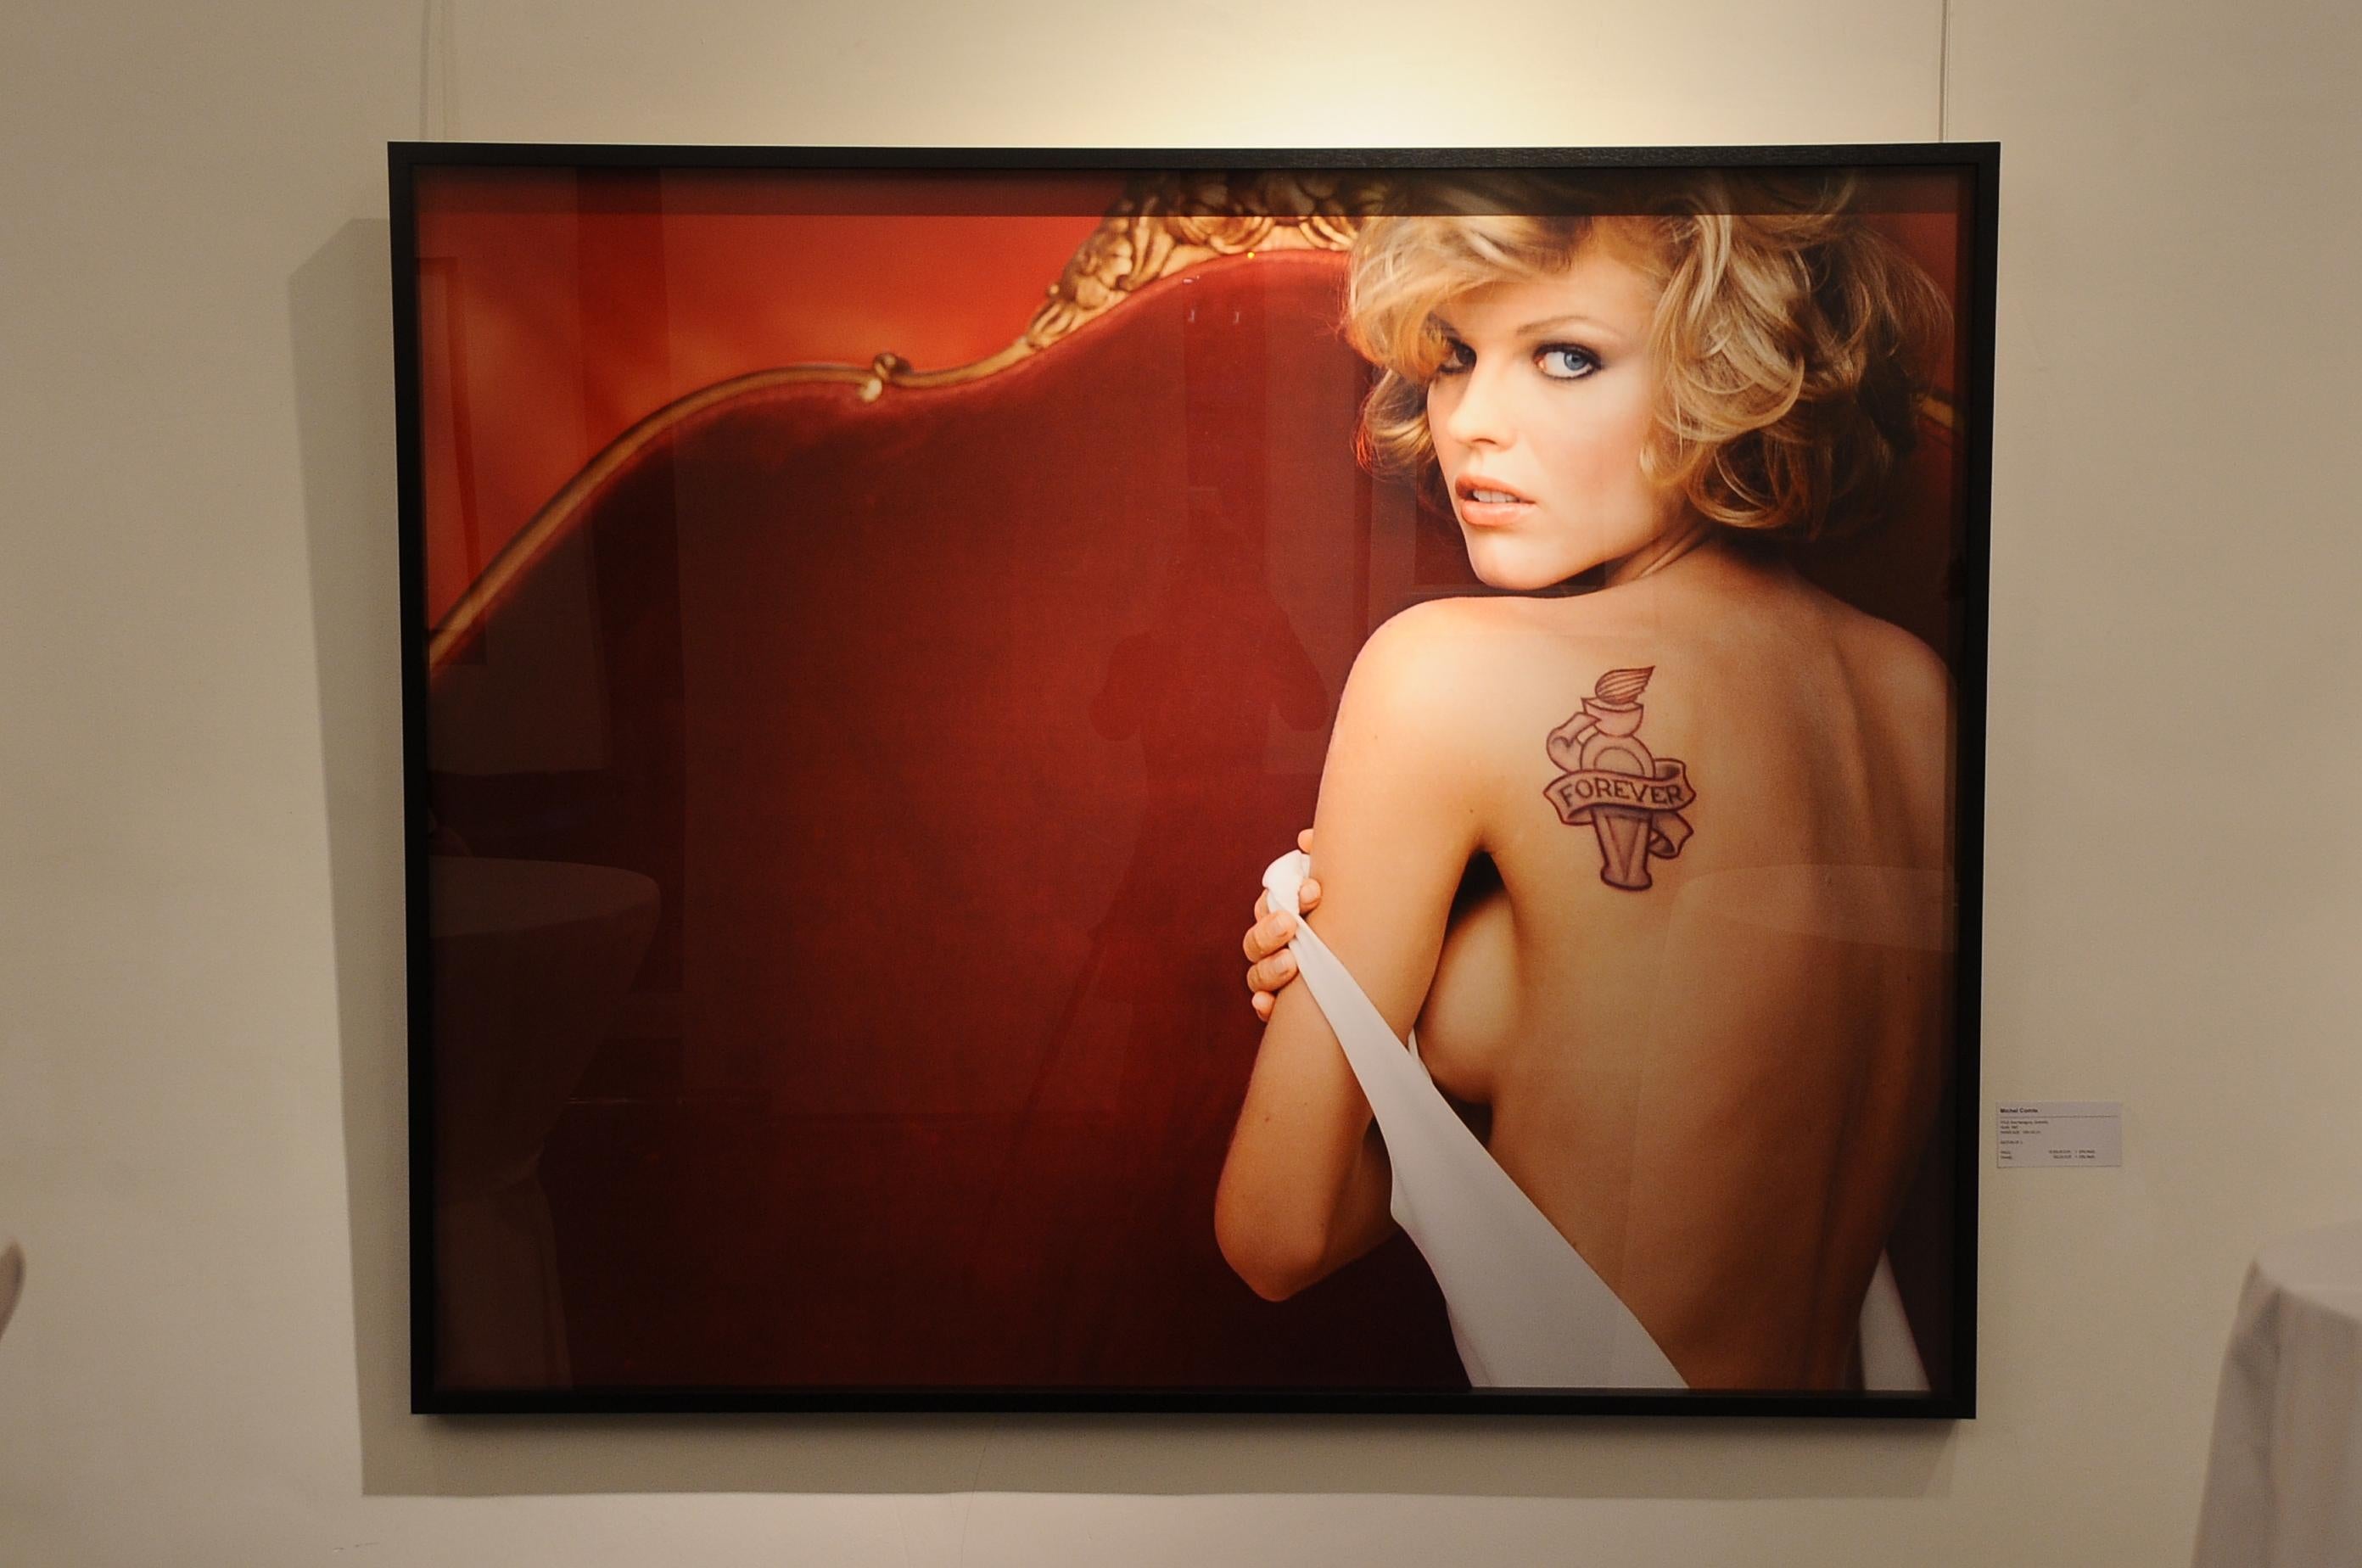 Porträt der Supermodel Eva Herzigova auf dem Sofa, die ihren nackten Rücken mit Tätowieren zeigt – Photograph von Michel Comte